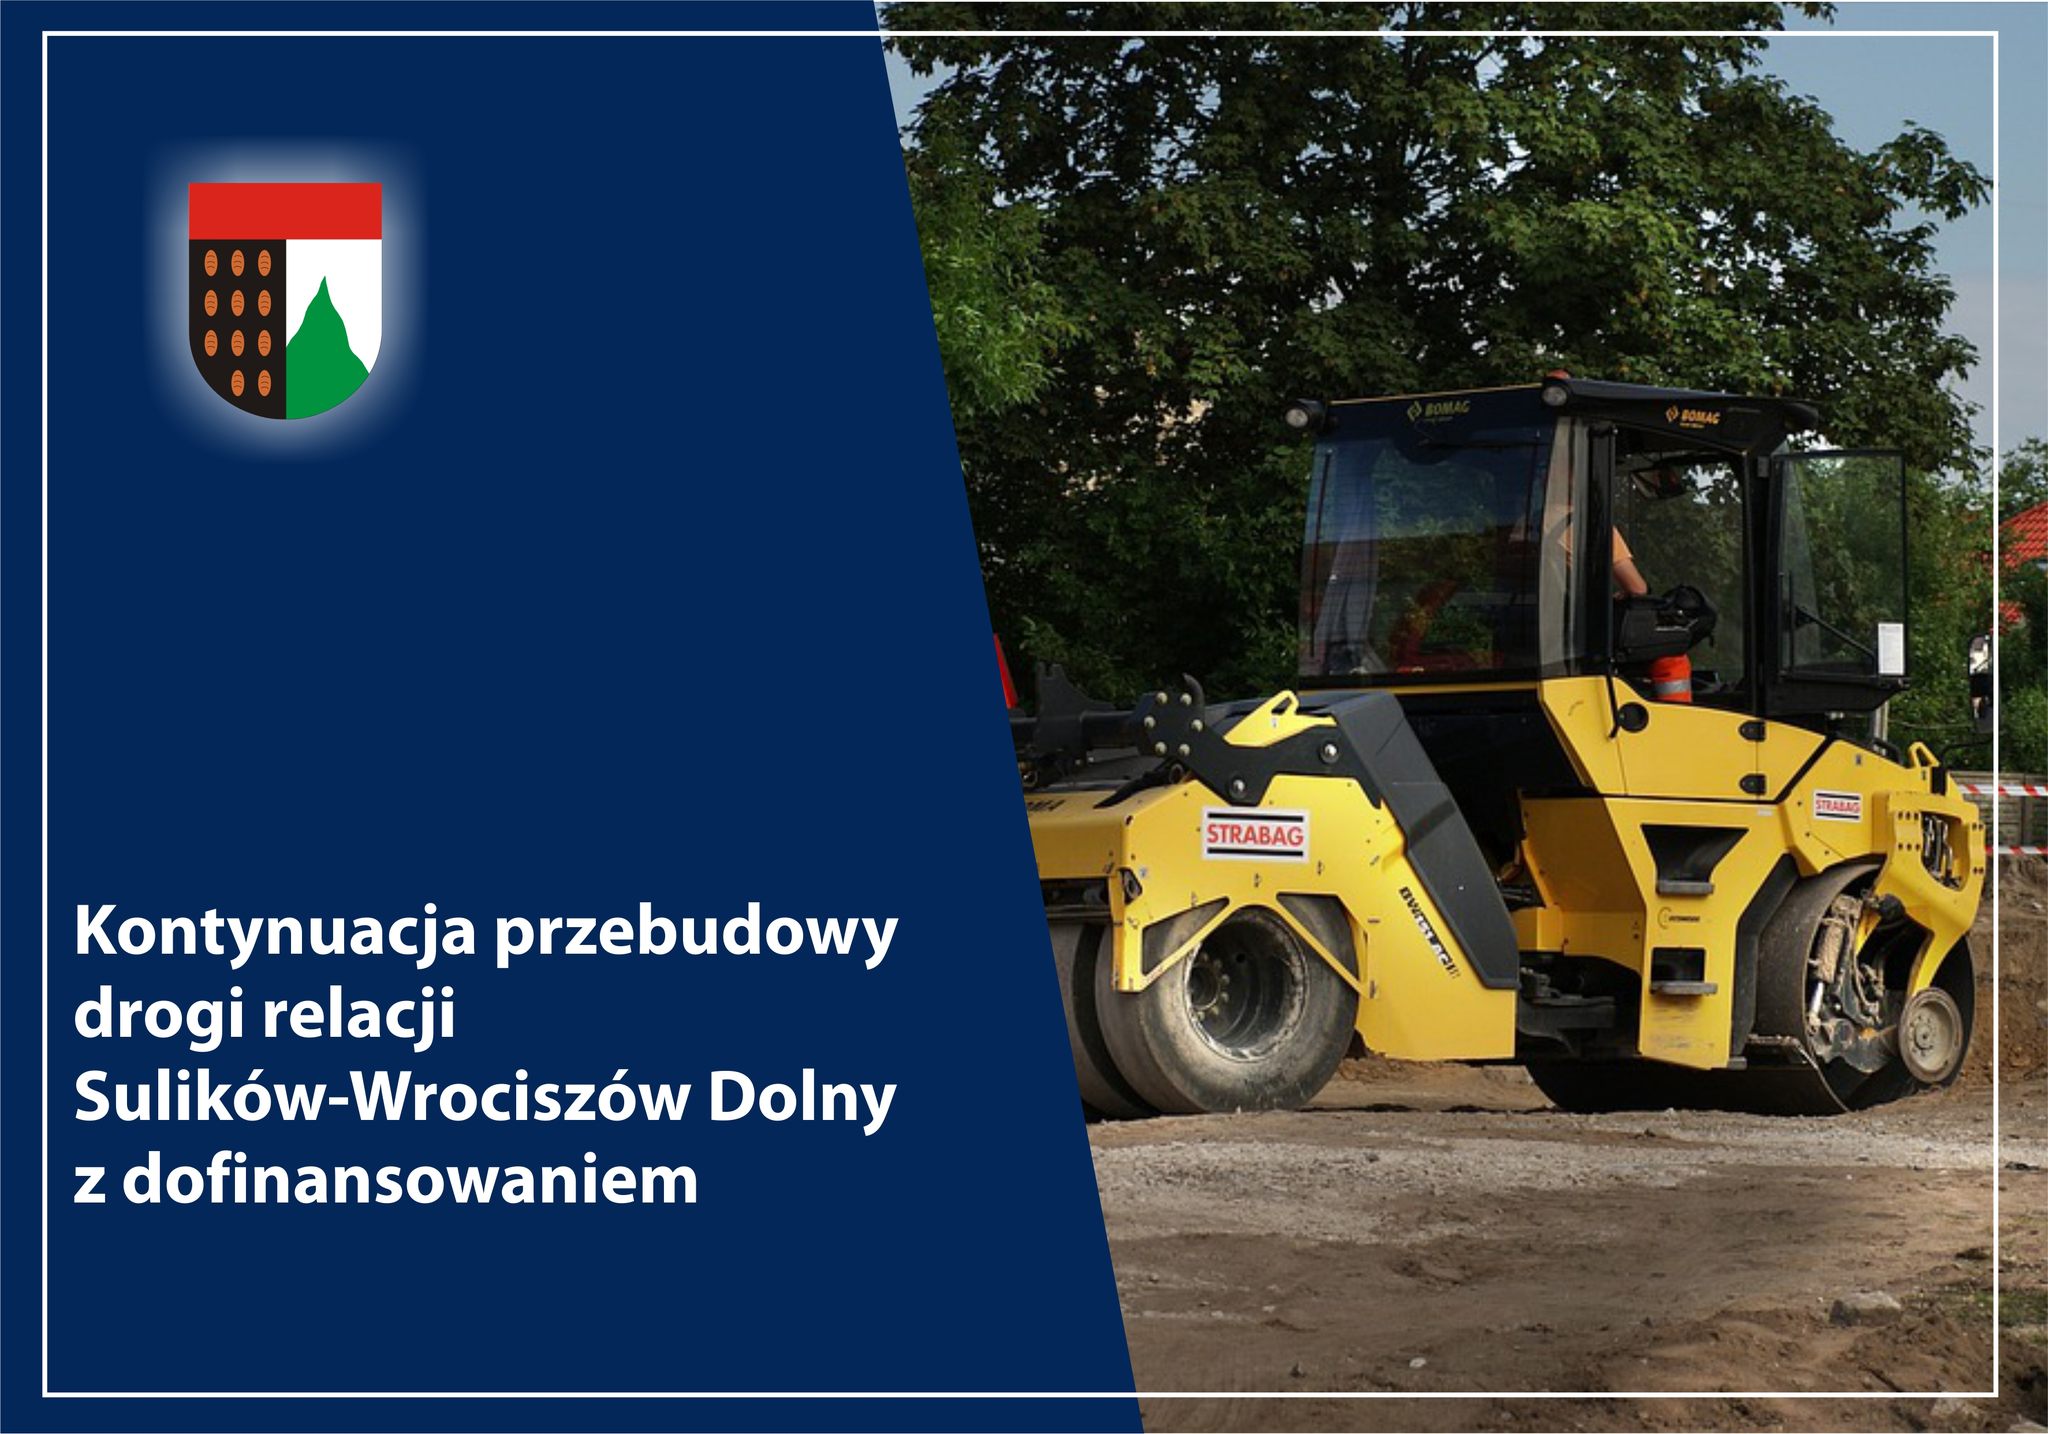 You are currently viewing Sulików – Dofinansowanie na kontynuację przebudowy odcinka drogi relacji Sulików-Wrociszów Dolny